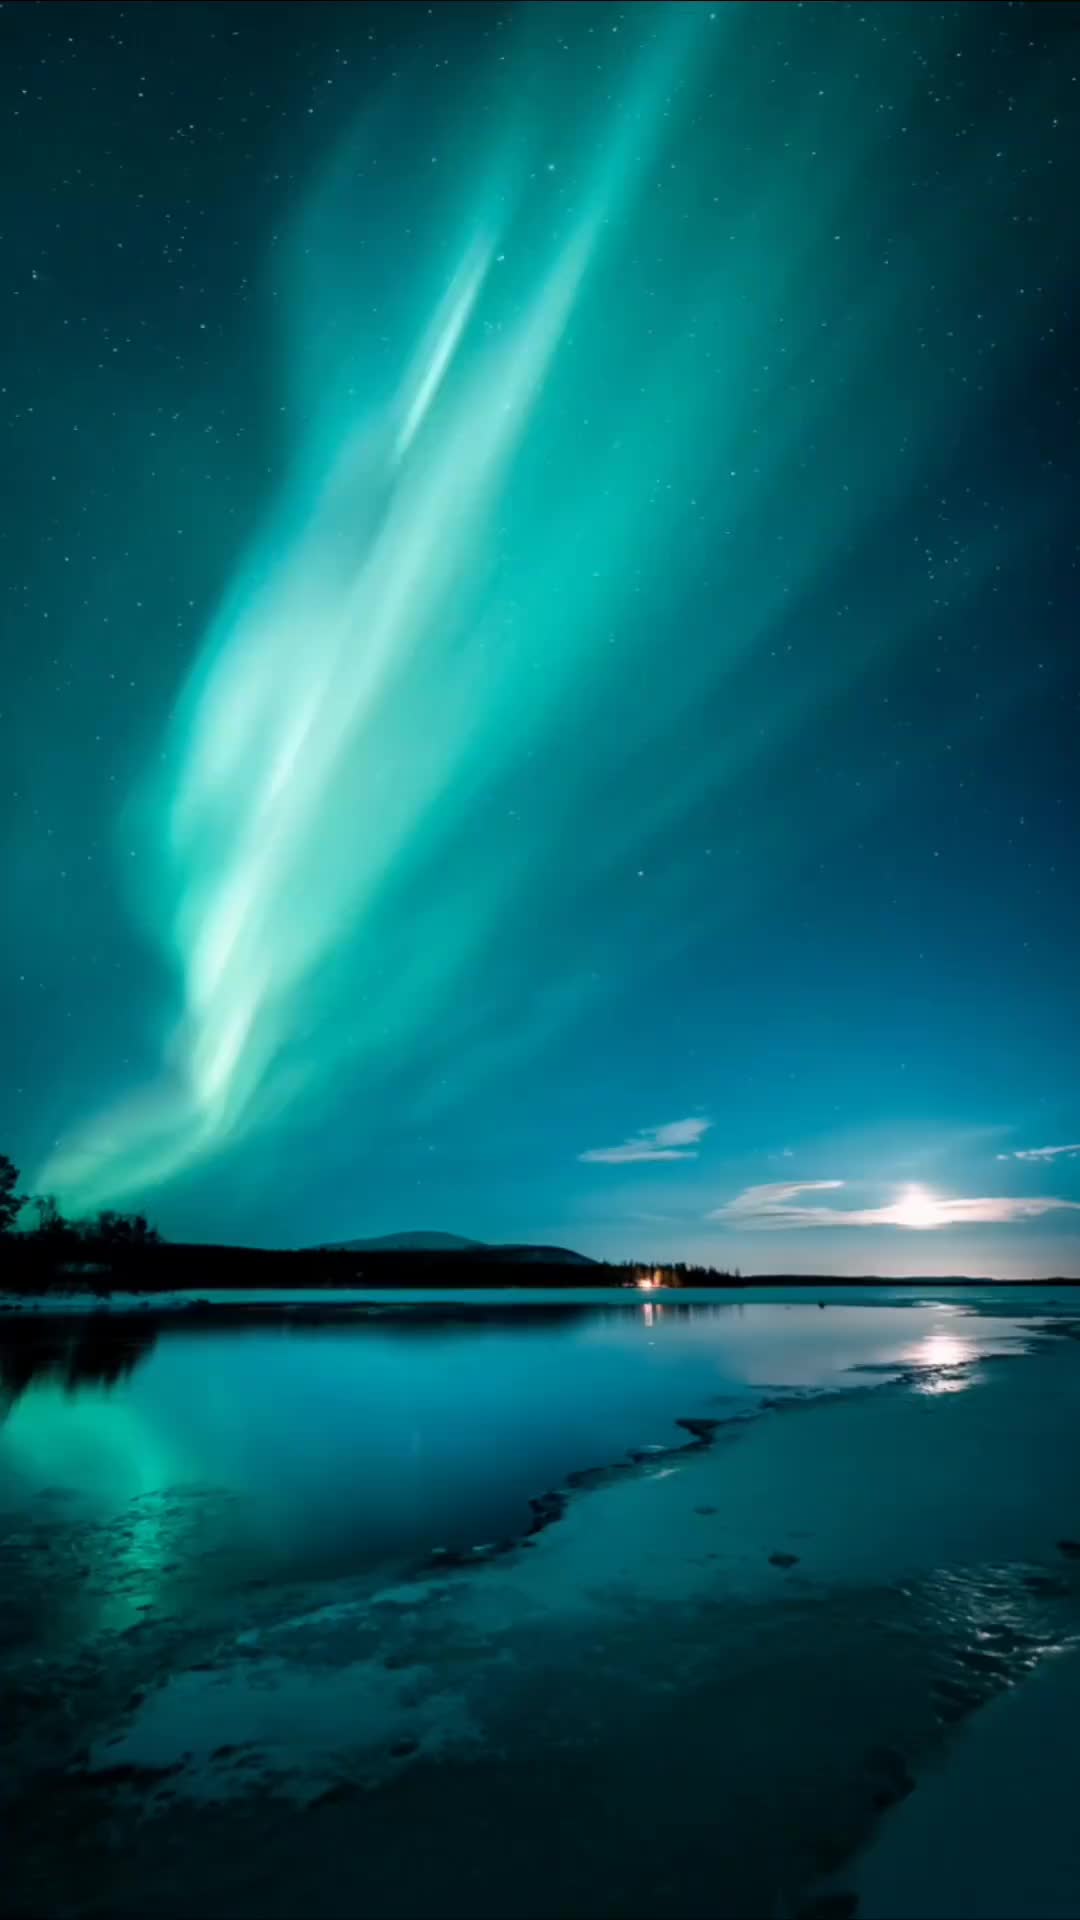 Flickering Northern Lights in Helsinki's Night Sky